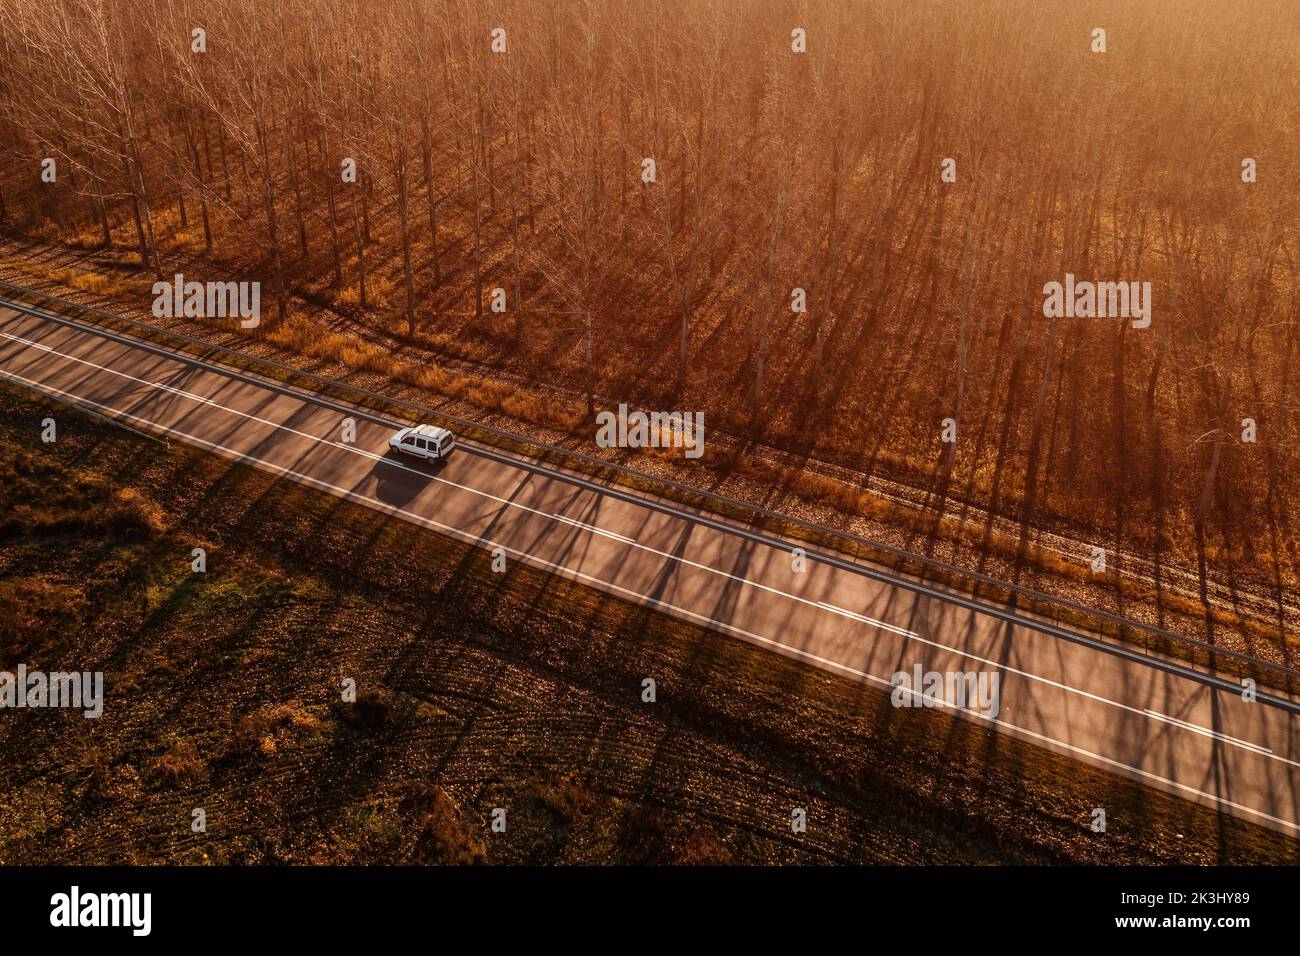 Vue aérienne du véhicule polyvalent (vmp) ou d'activités de loisirs (vbl) sur la route à travers les paysages d'automne, la phoographie de drone Banque D'Images